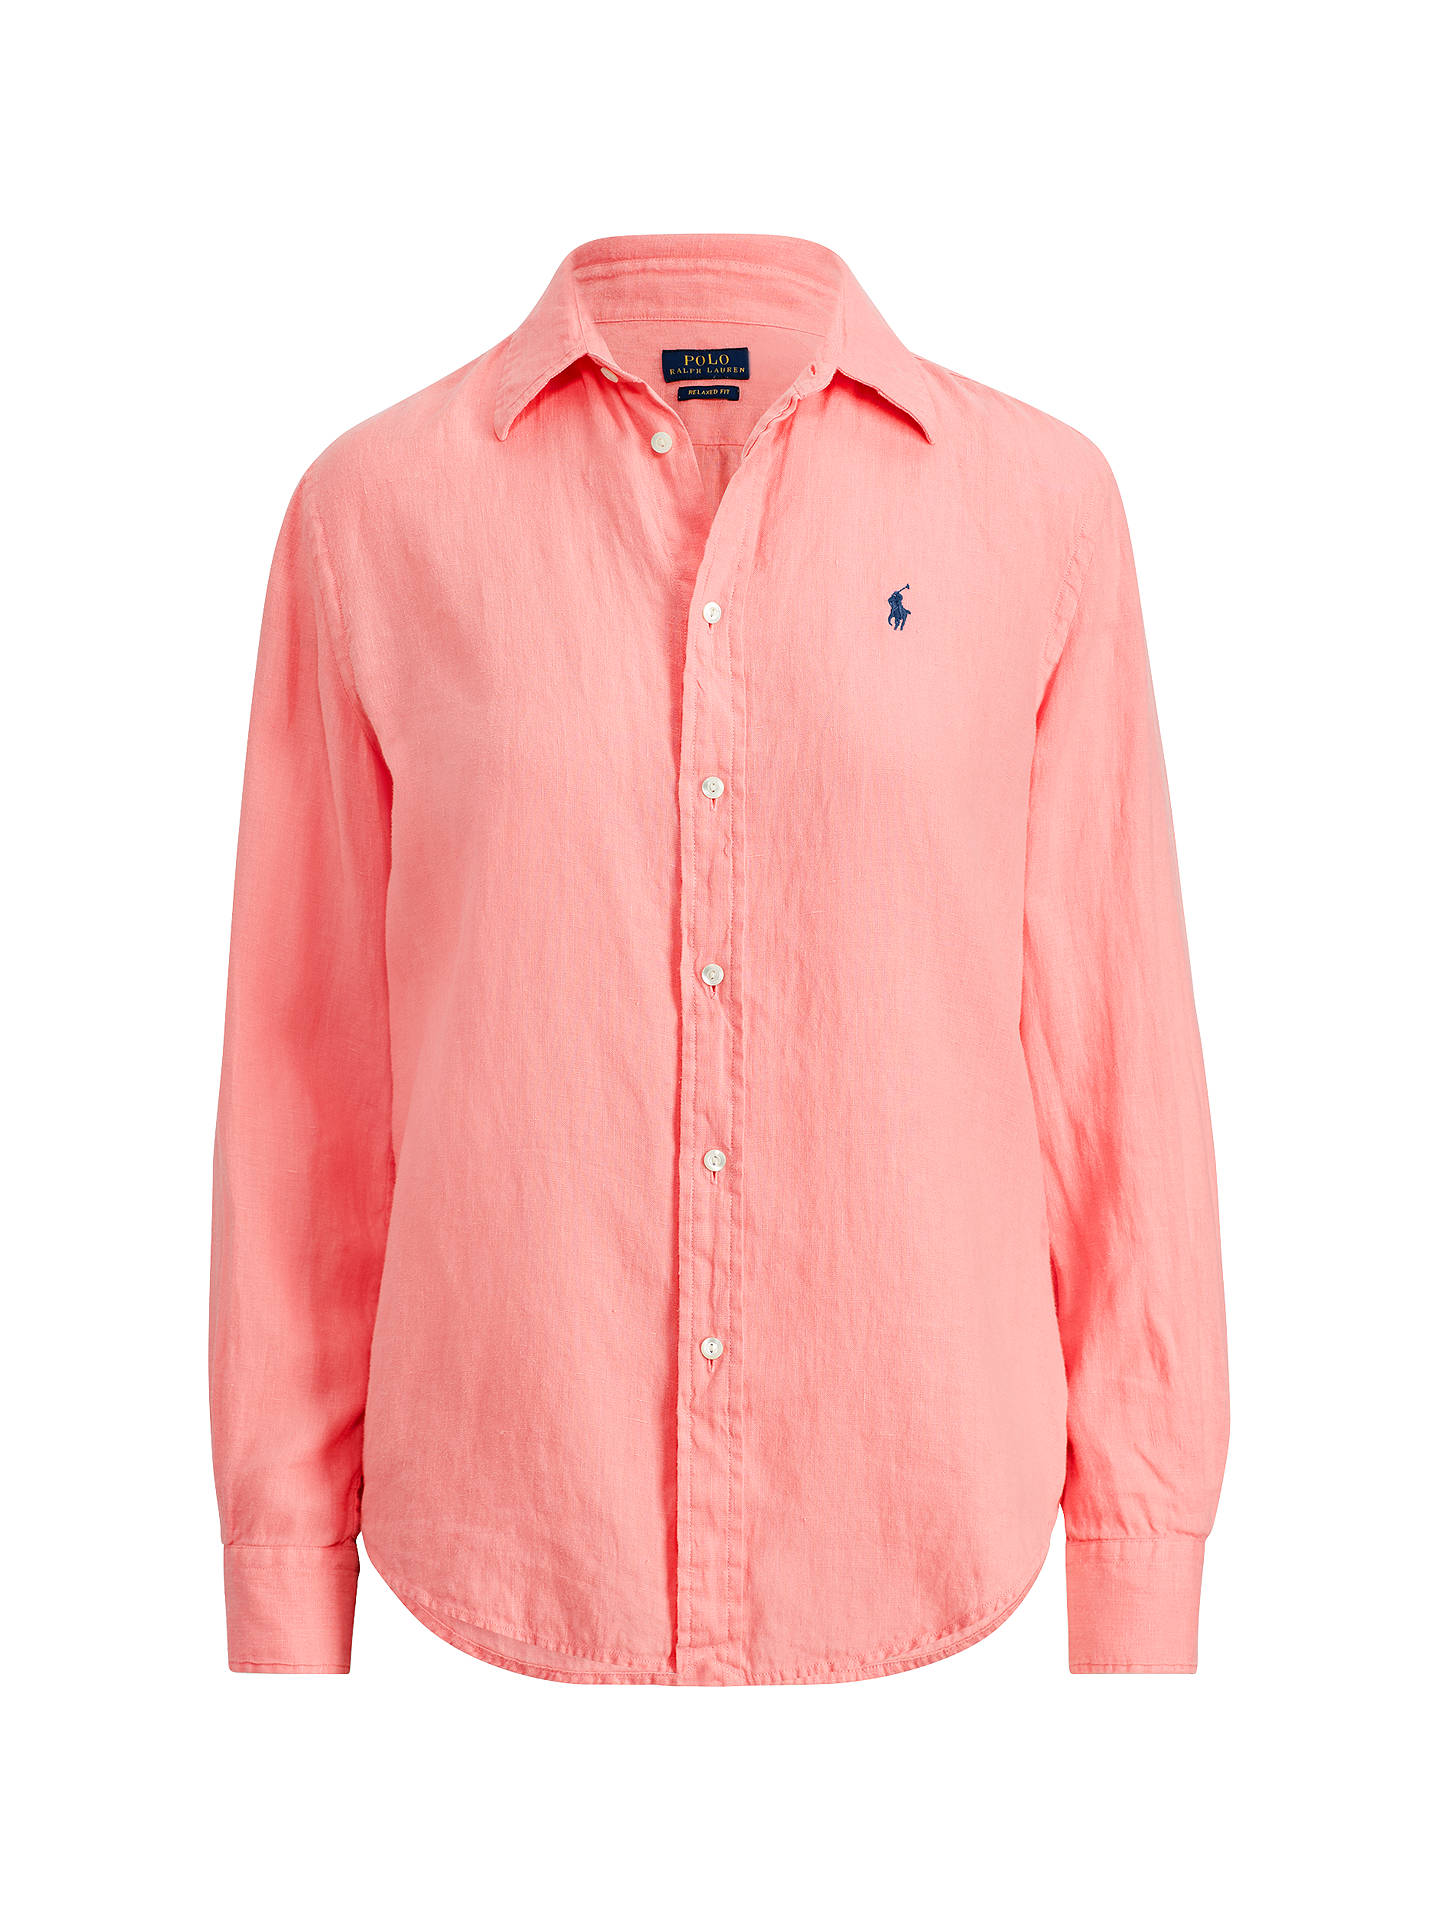 Polo Ralph Lauren Relaxed Fit Linen Shirt, Ribbon Pink at John Lewis ...